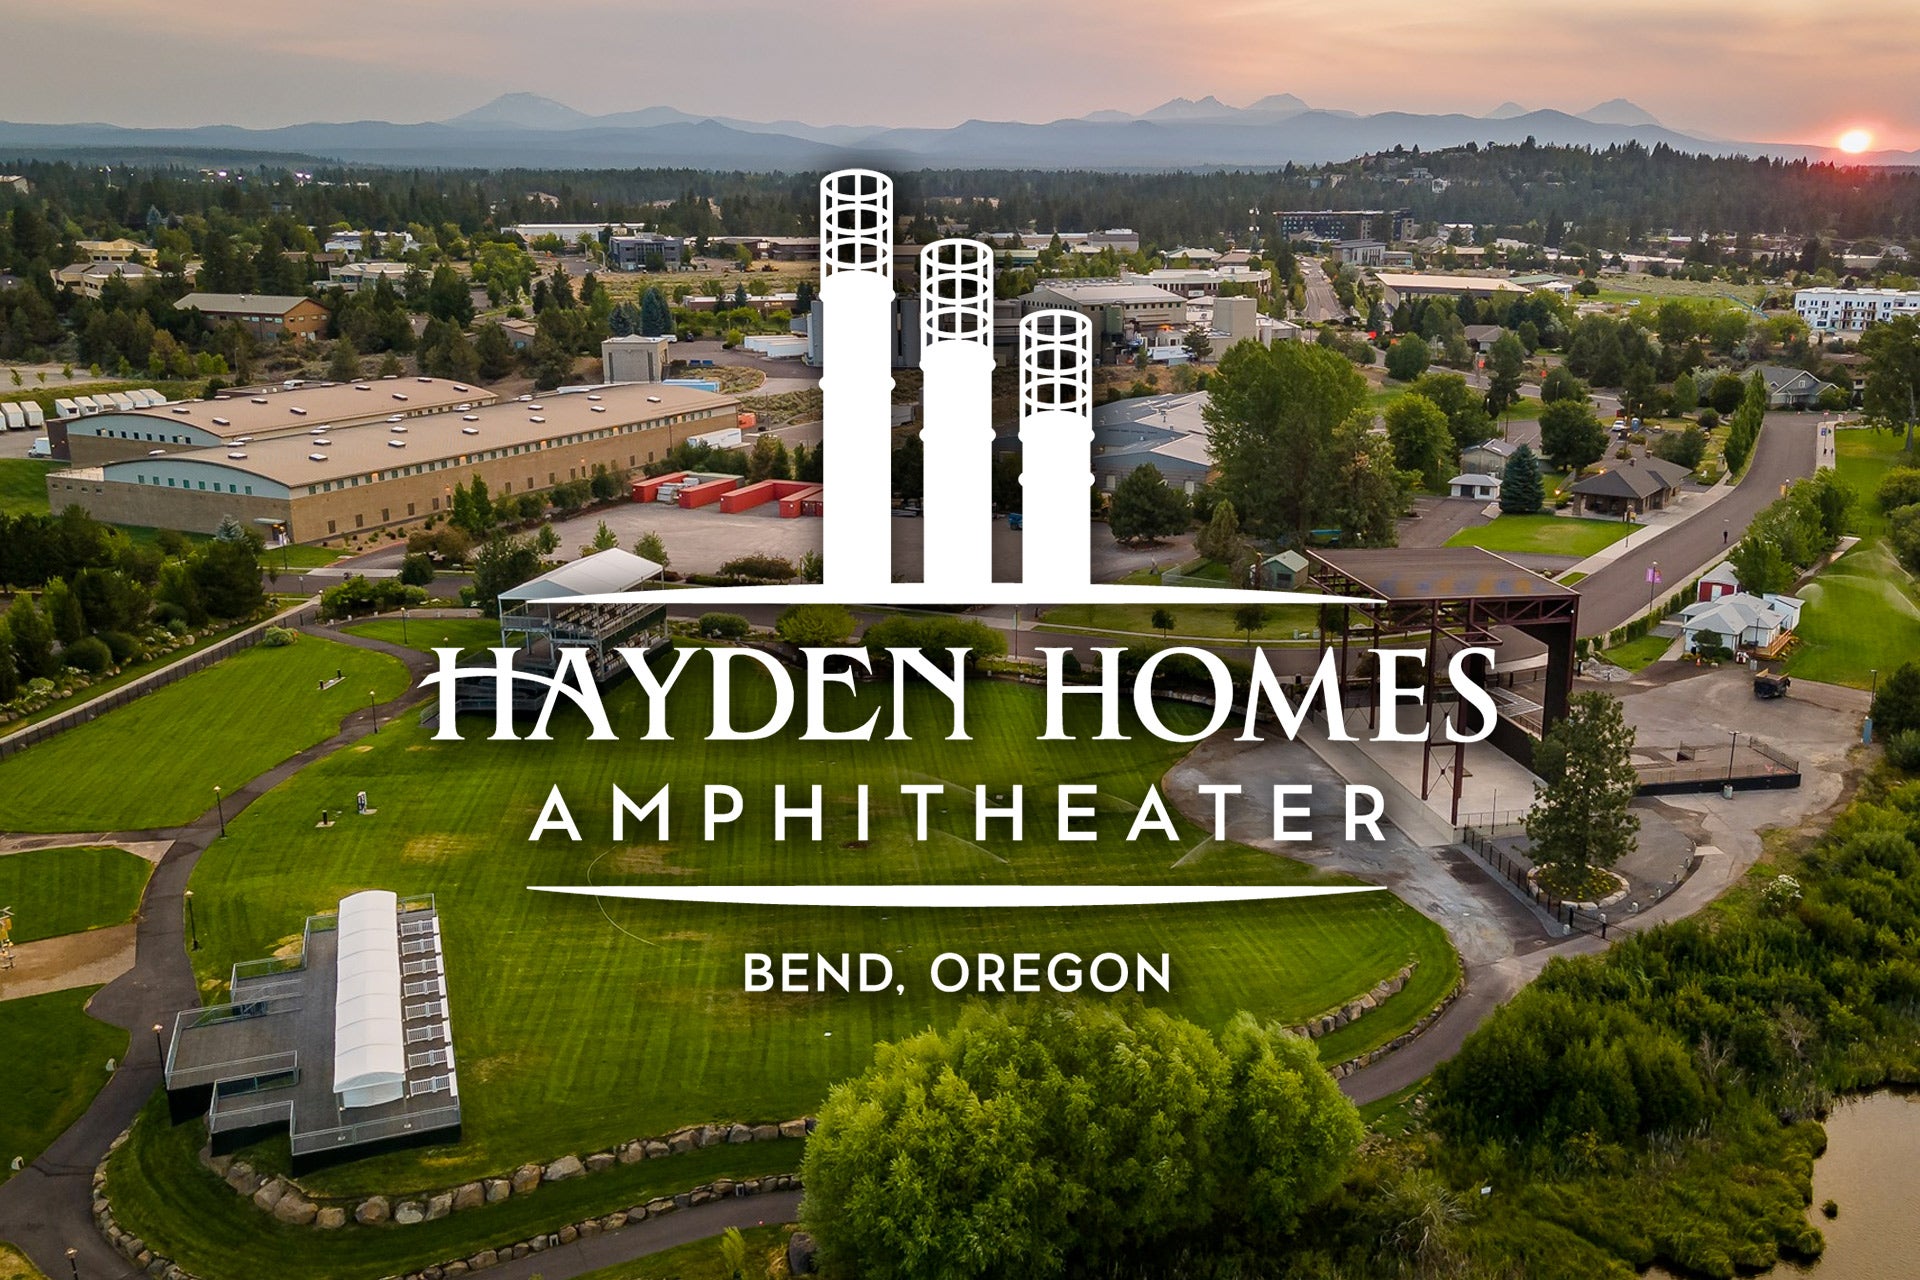 Hayden Homes Amphitheater